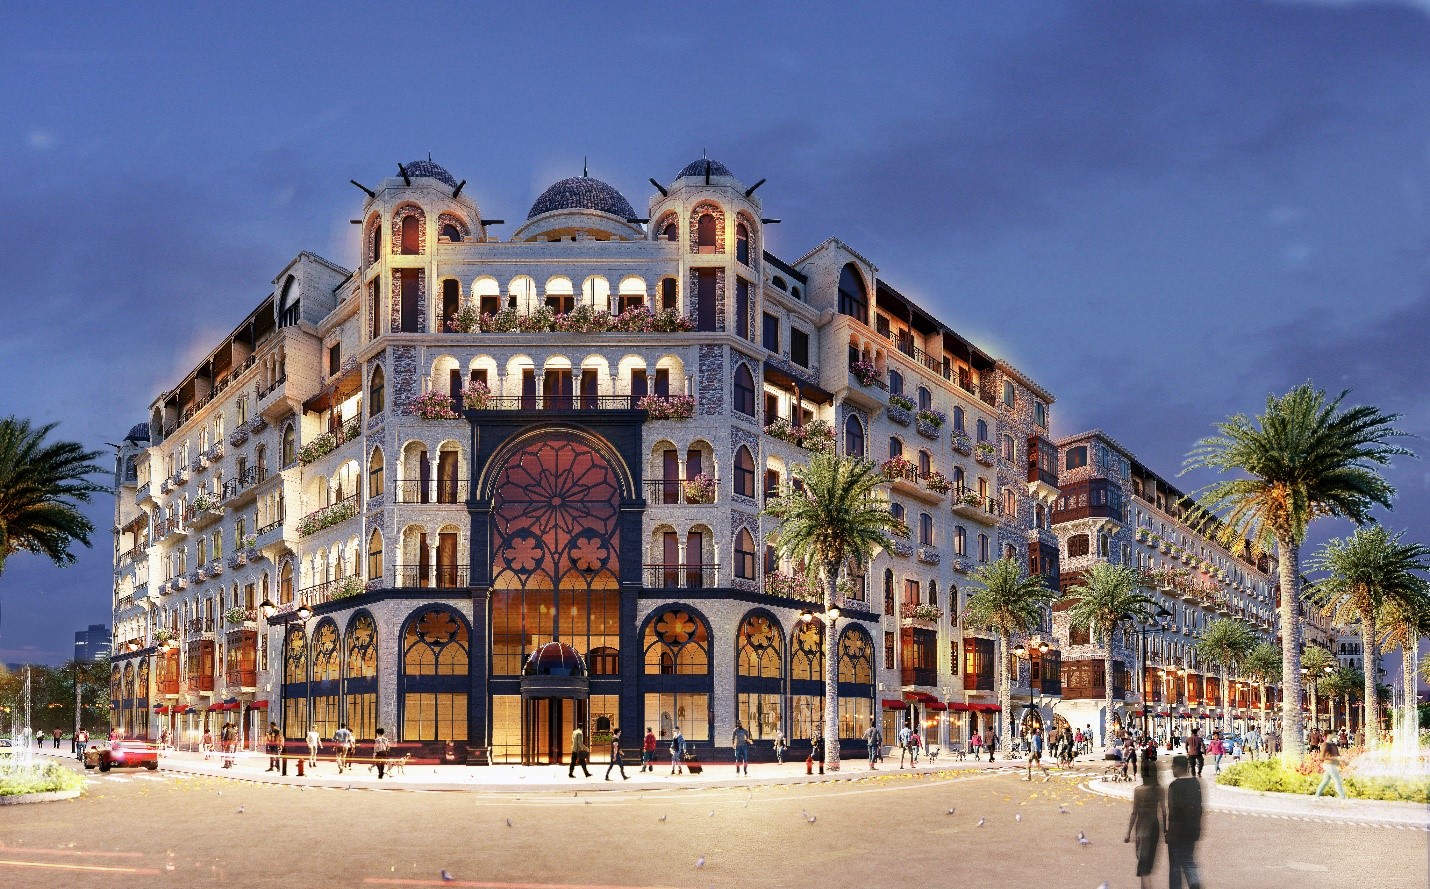 Boutique Hotel Vinpearl Grand World – cỗ máy in tiền mang lợi nhuận từ khai thác khách sạn